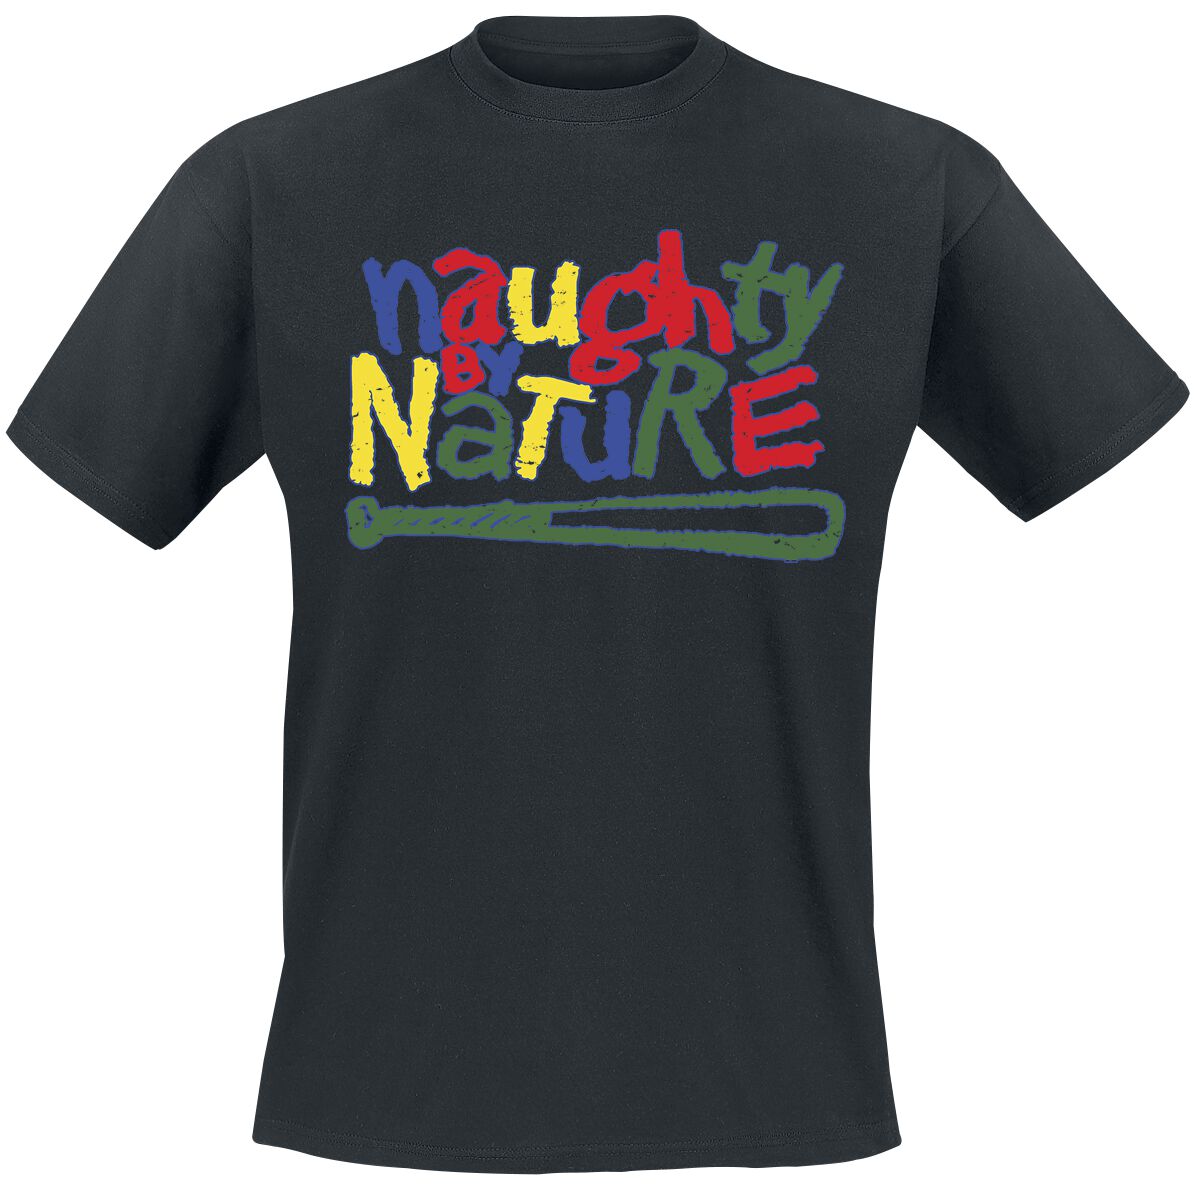 Naughty by Nature T-Shirt - Classic Colourful Logo - S bis 3XL - für Männer - Größe 3XL - schwarz  - Lizenziertes Merchandise!